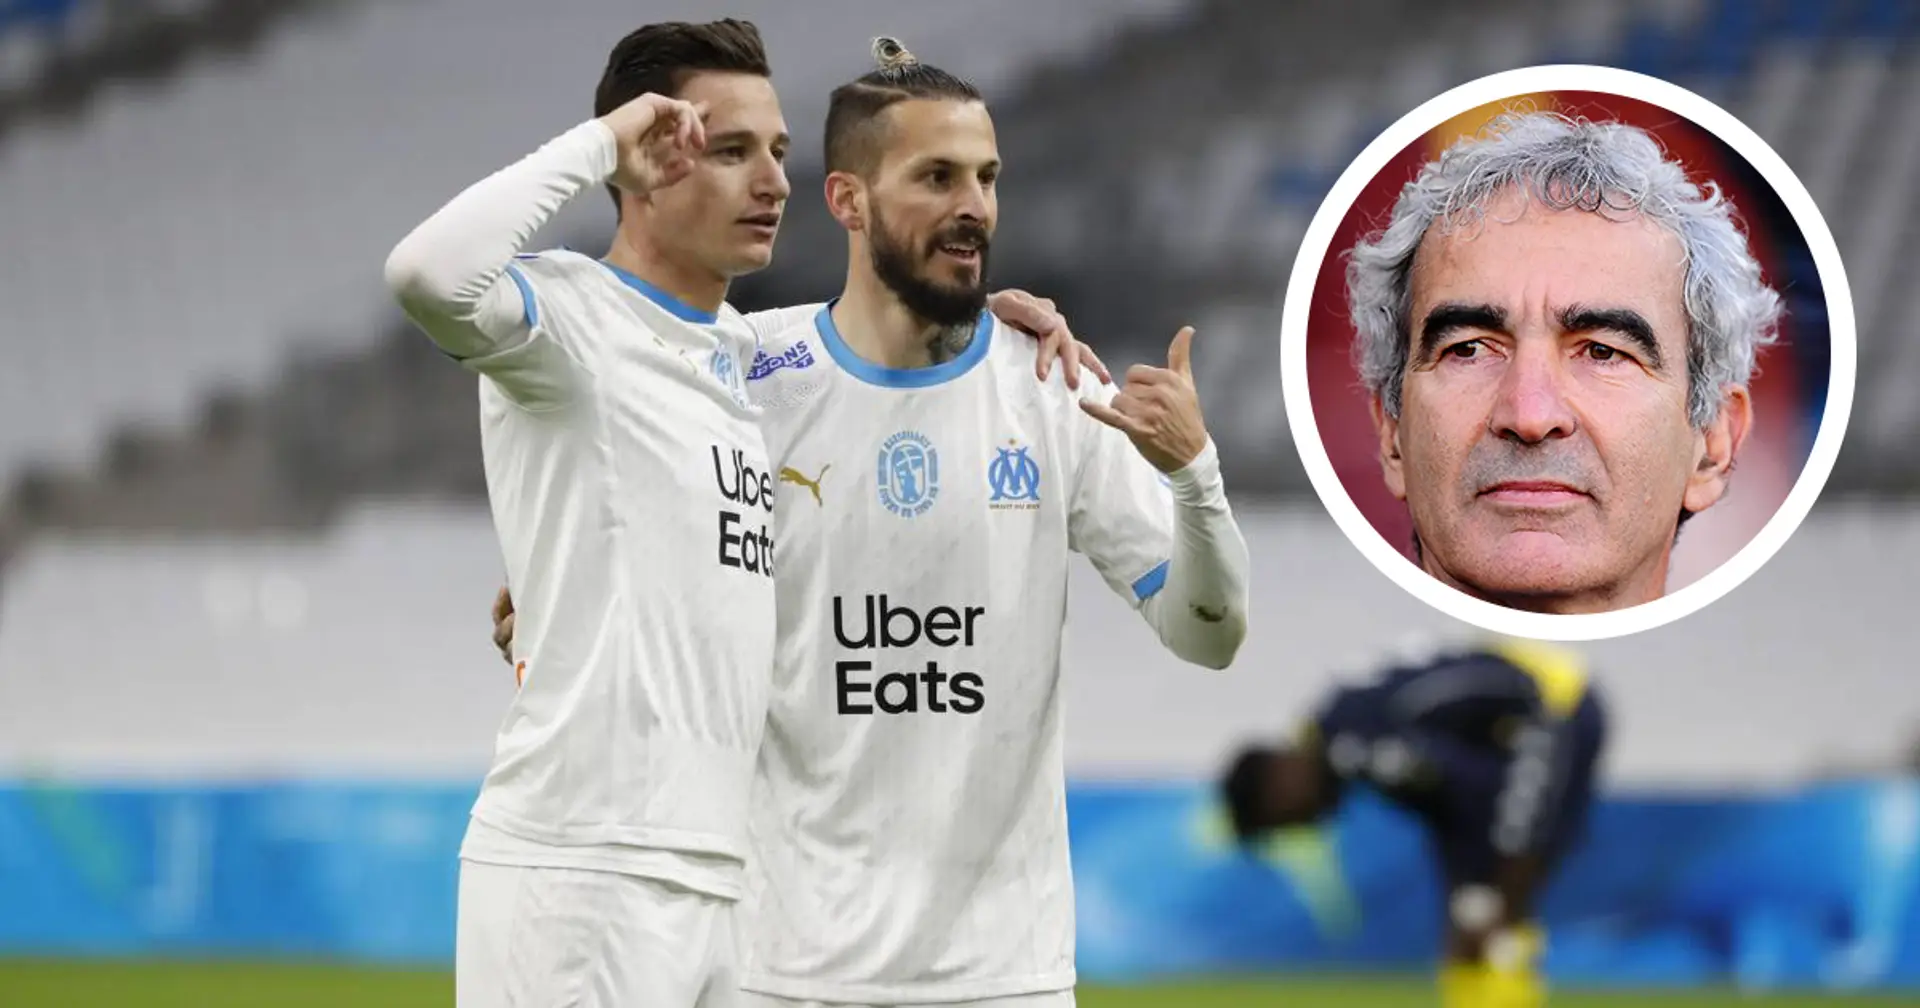 "L’OM ressemble à une belle équipe italienne", Raymond Domenech ne tari pas d'éloges l'Olympique de Marseille